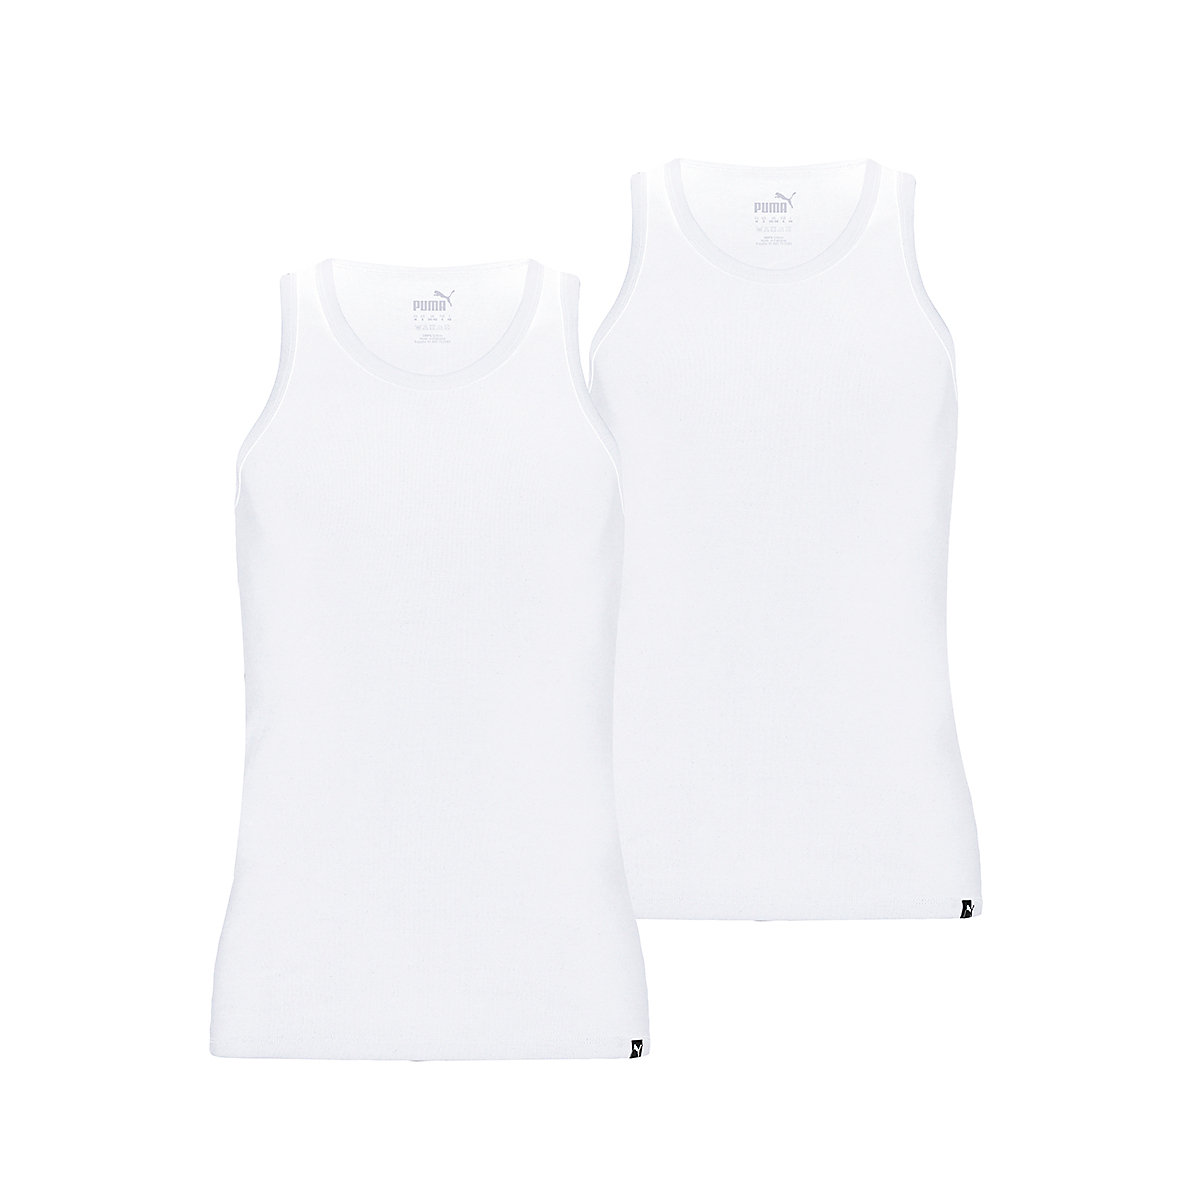 PUMA Herren Tank Top 2er Pack Basic Unterhemd Rundhals Single Jersey einfarbig Unterhemden weiß